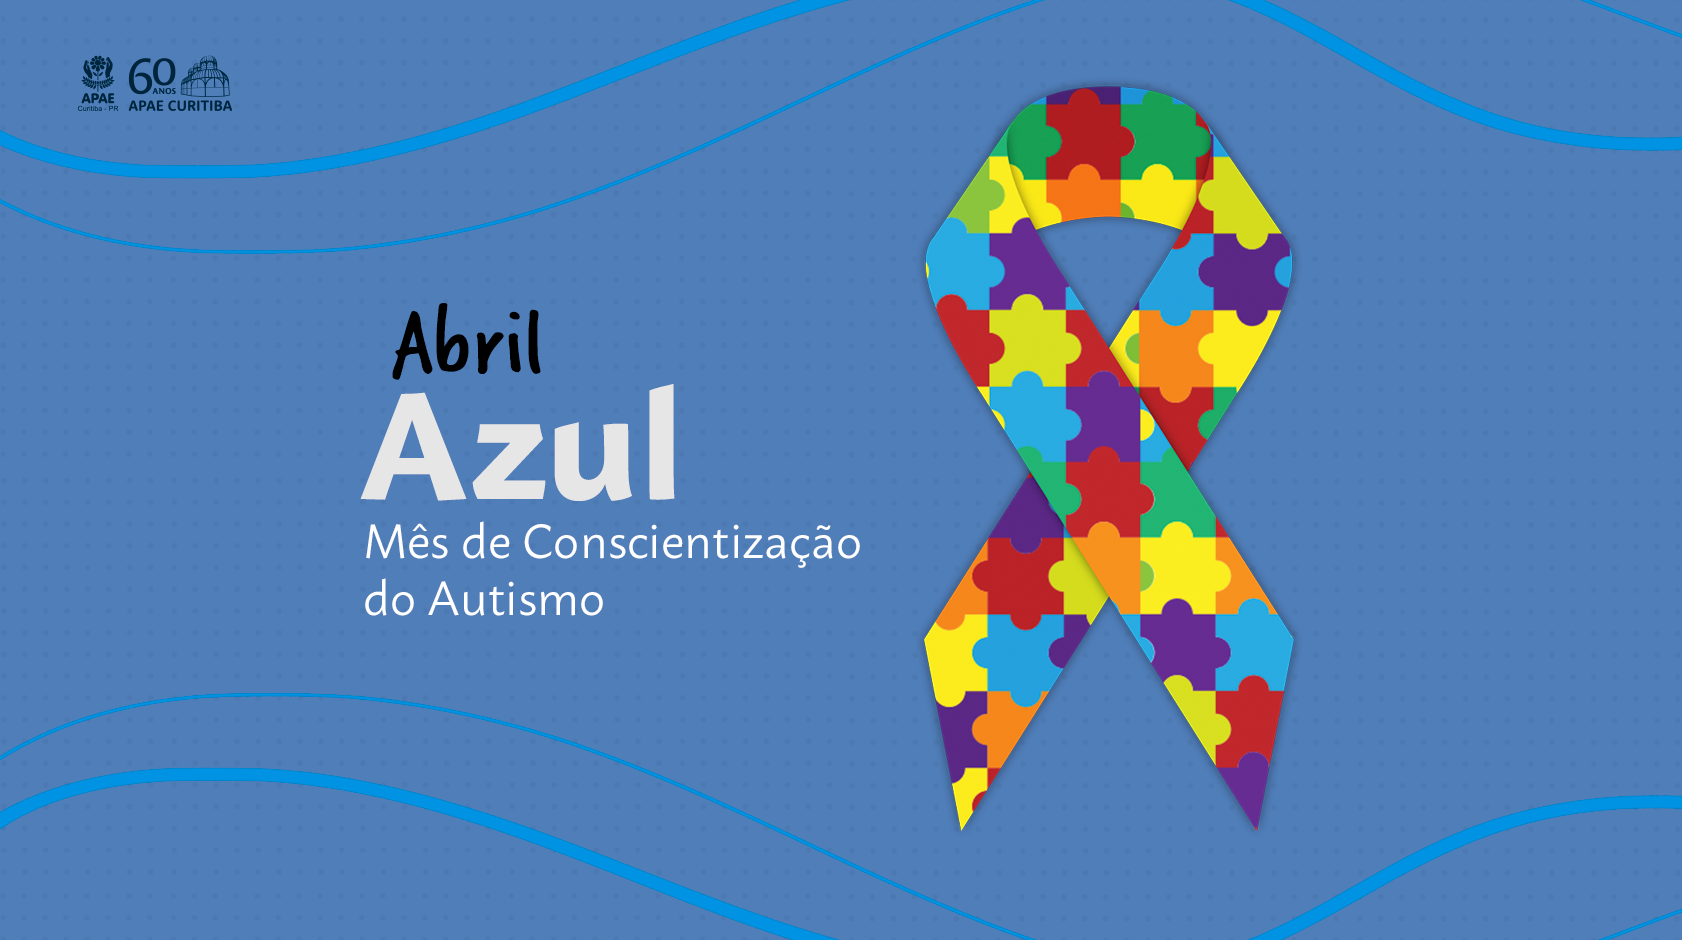 Abril Azul: Na imagem, uma laço colorido que se refere ao autismo e a frase: Abril Azul Mês de Conscientização do Autismo